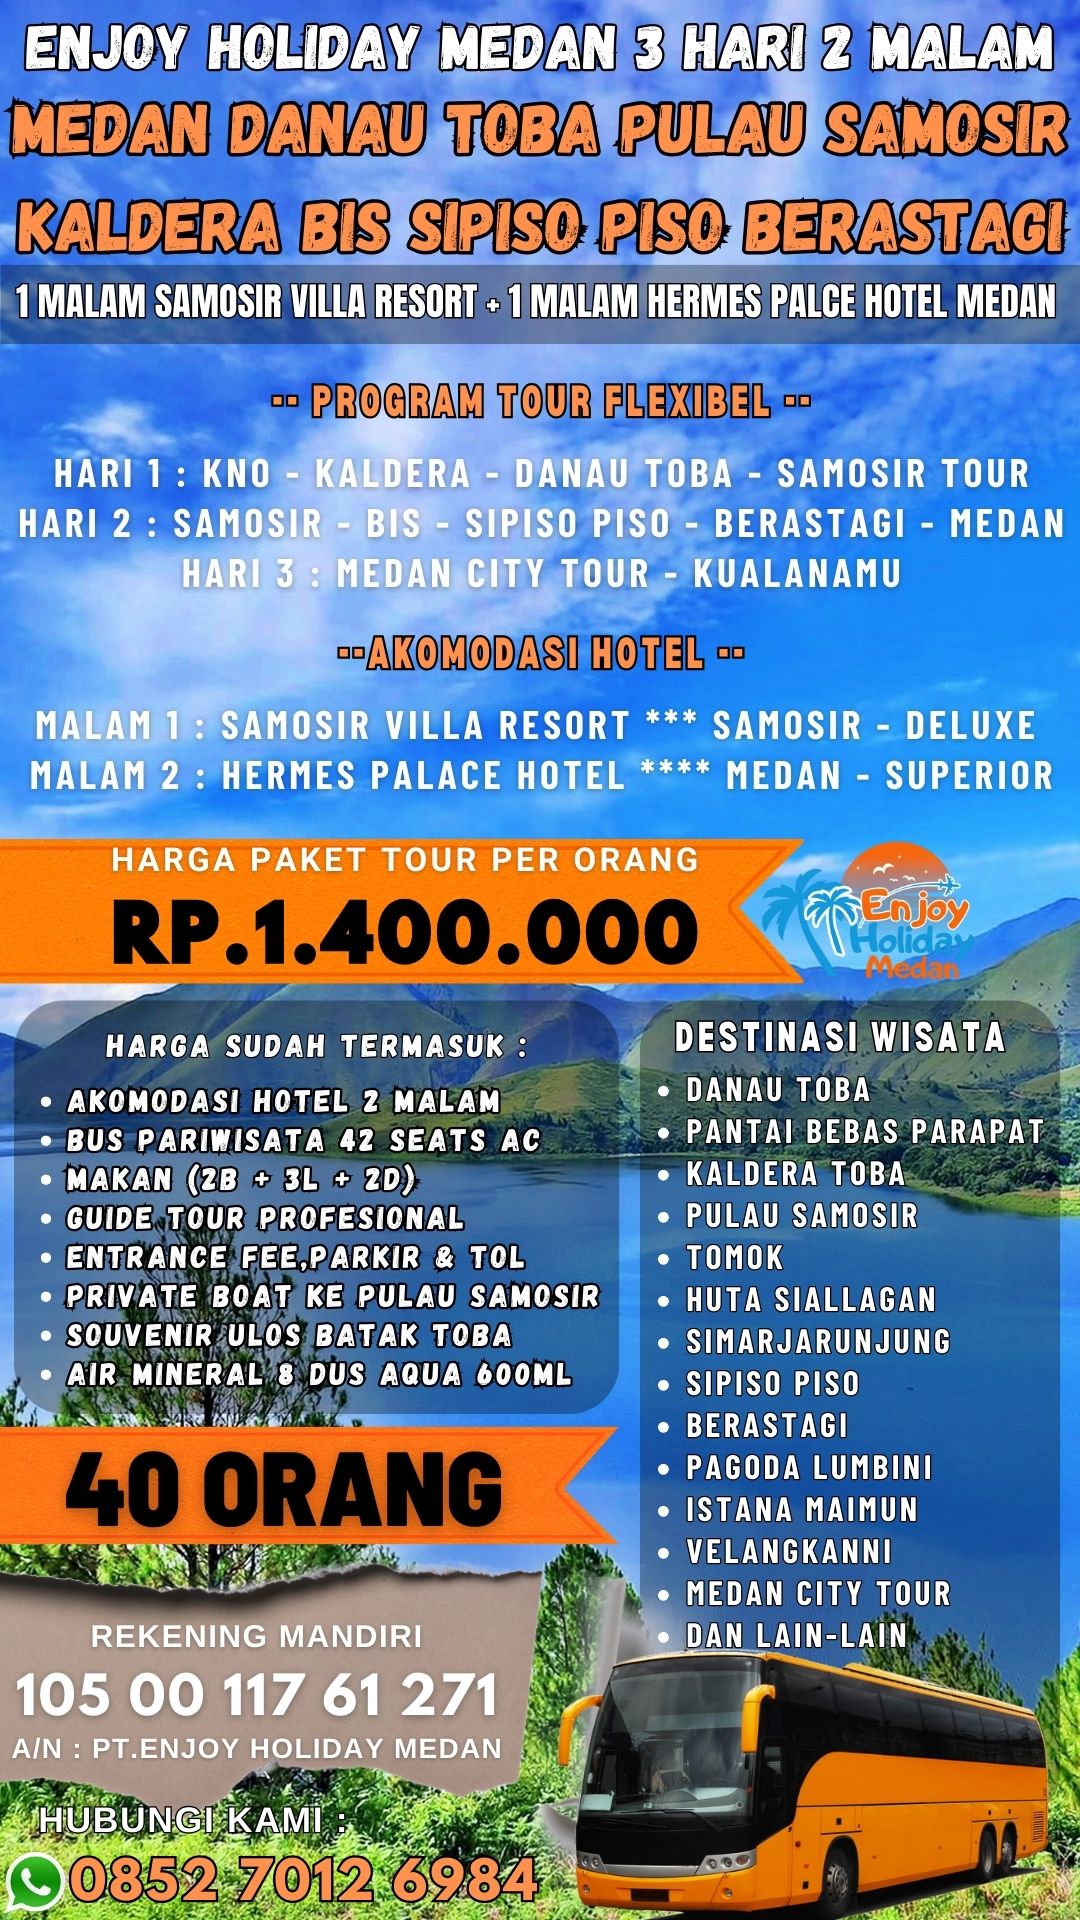 Lake Toba Tour Package Malaysia